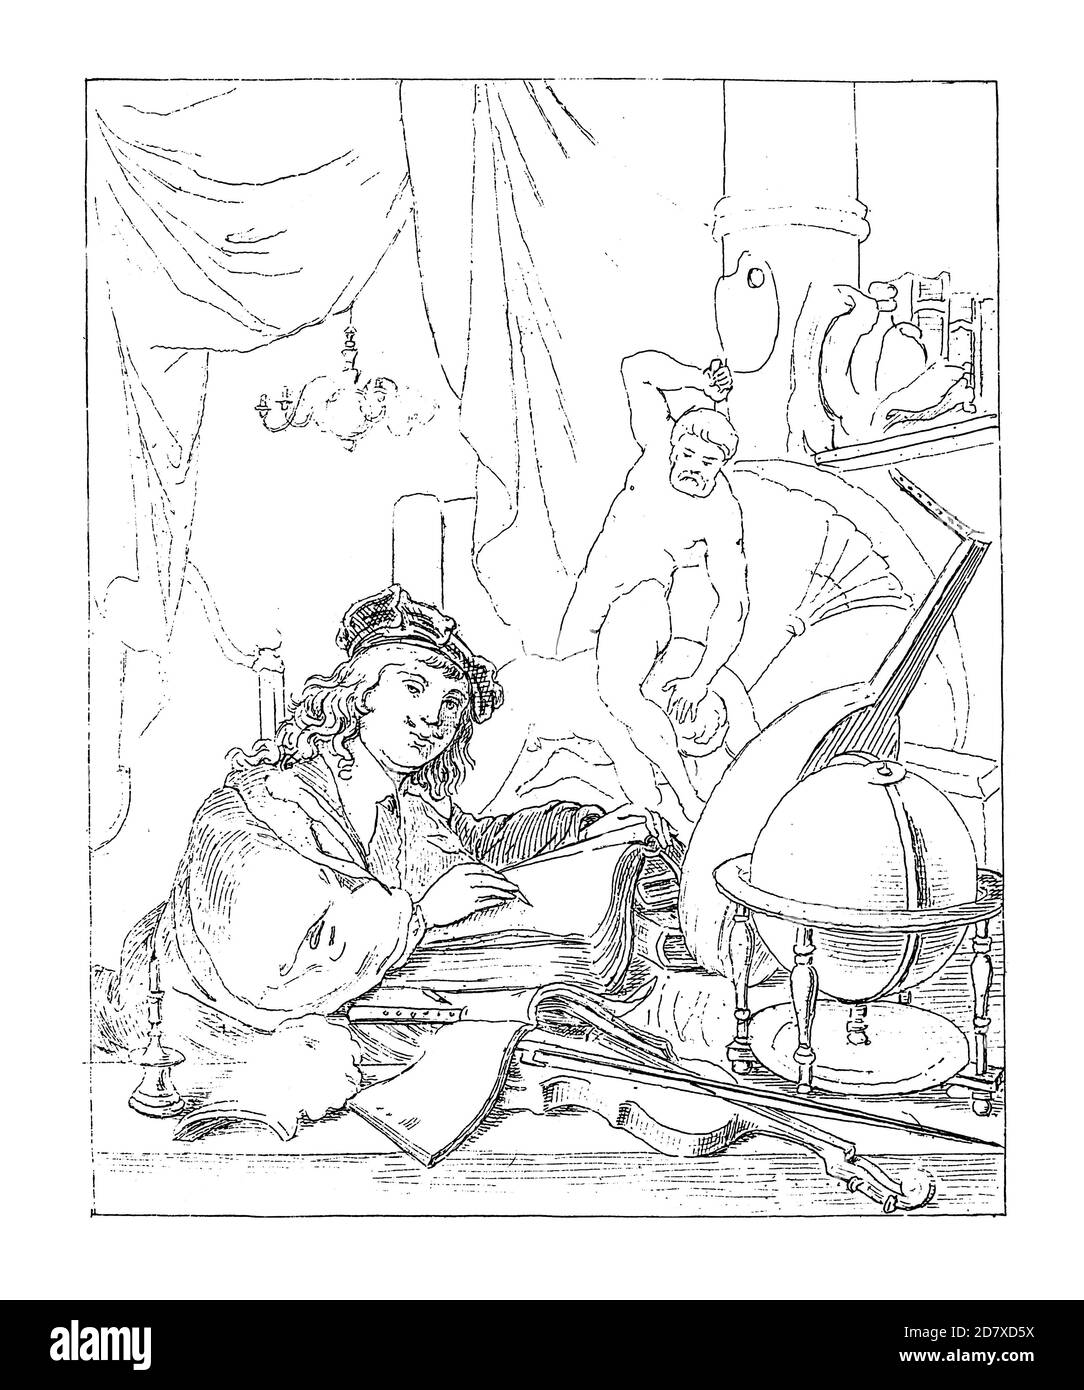 Antica illustrazione del XIX secolo raffigurante il Pittore nel suo Studio, dipinto di Gerrit Dou (datato 1647). Dou era pittore olandese dell'età dell'oro che speci Foto Stock